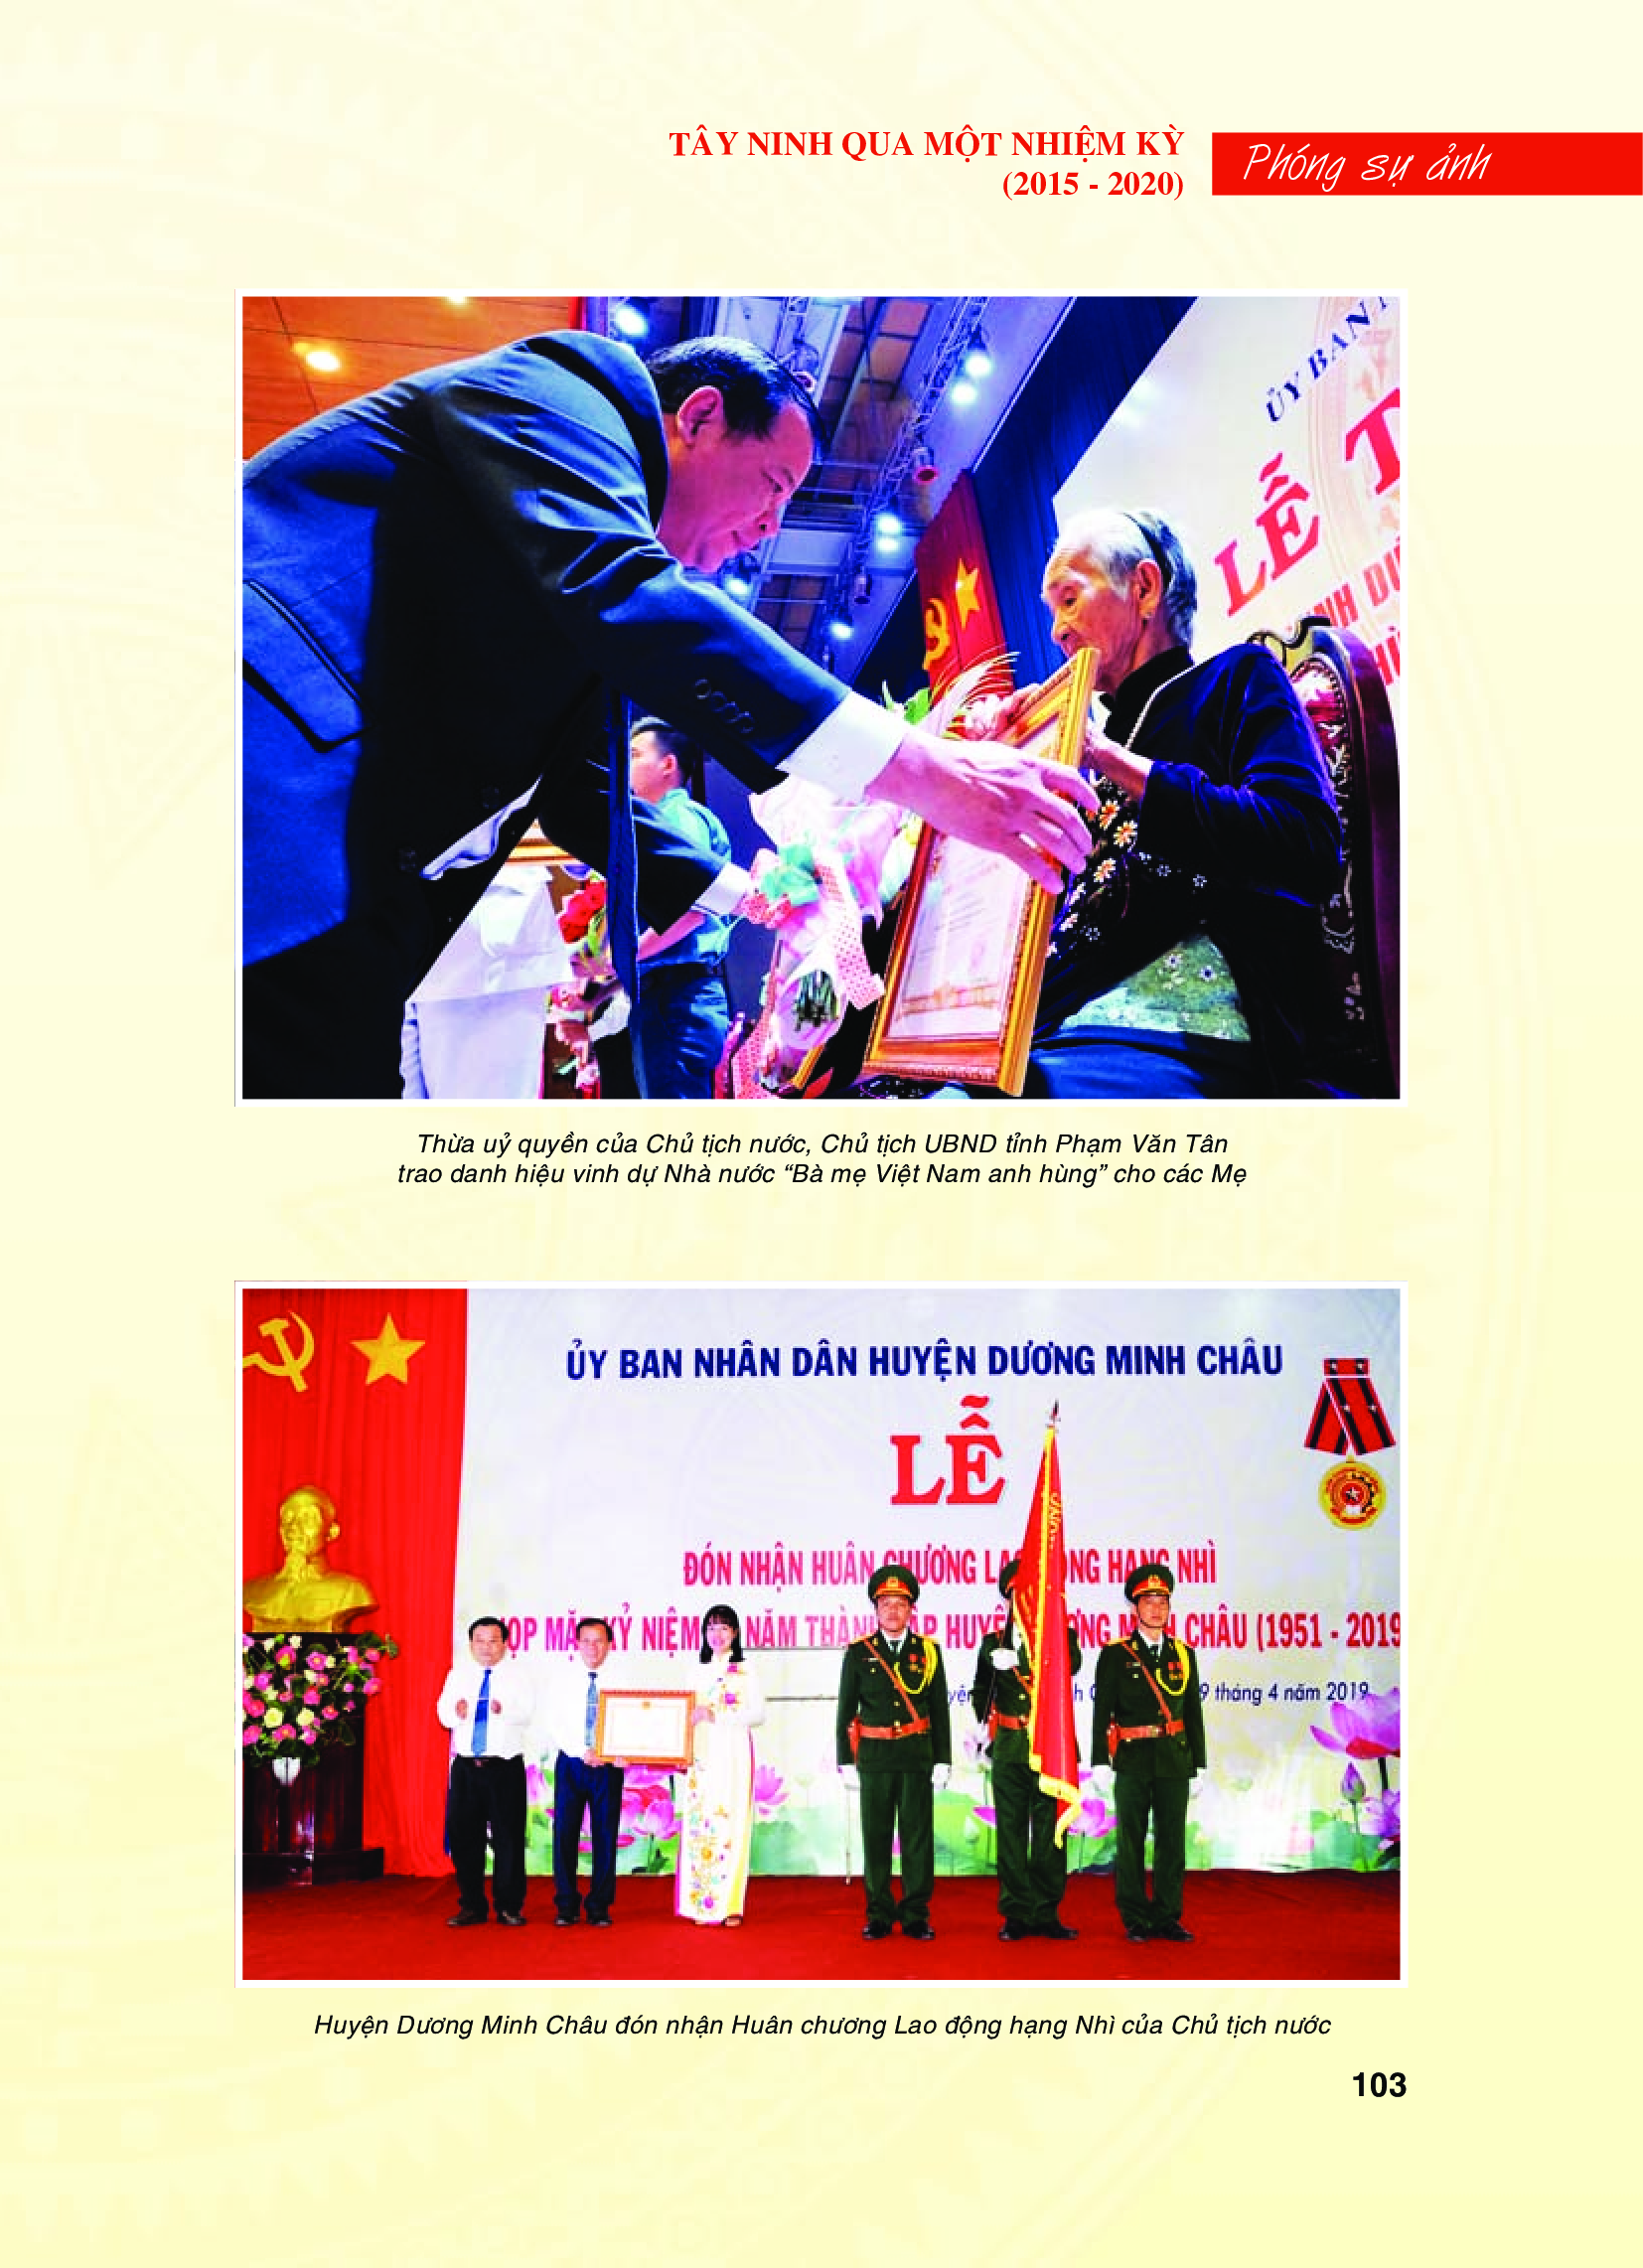 Tây Ninh qua một nhiệm kỳ (2015 - 2020):  Quốc phòng - An ninh